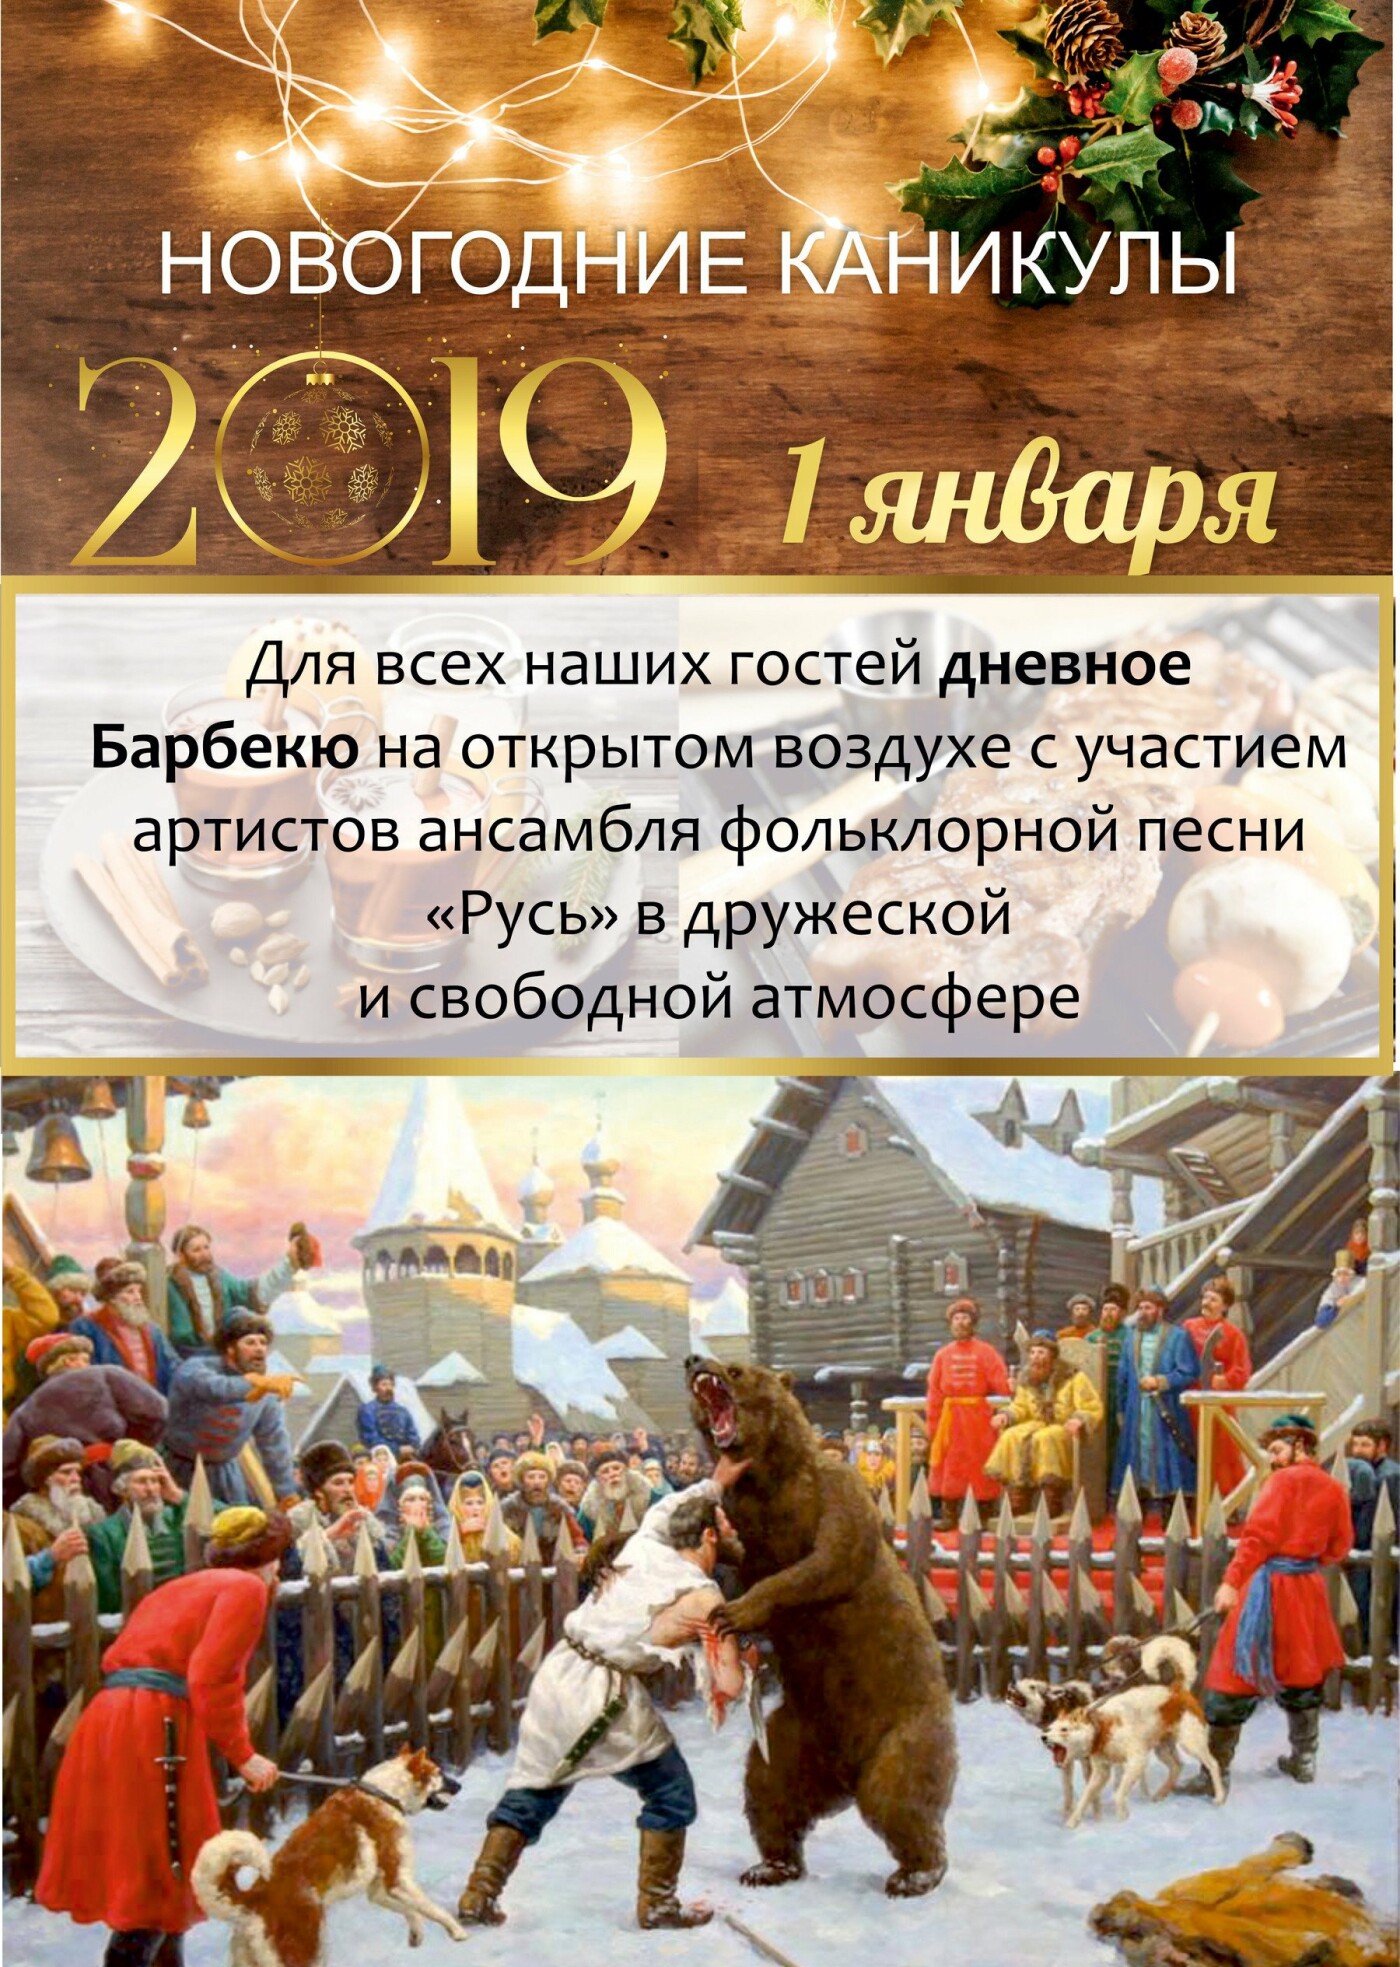 Встречайте Новый год-2019 всей семьей в санатории «Айвазовское»!, фото-3